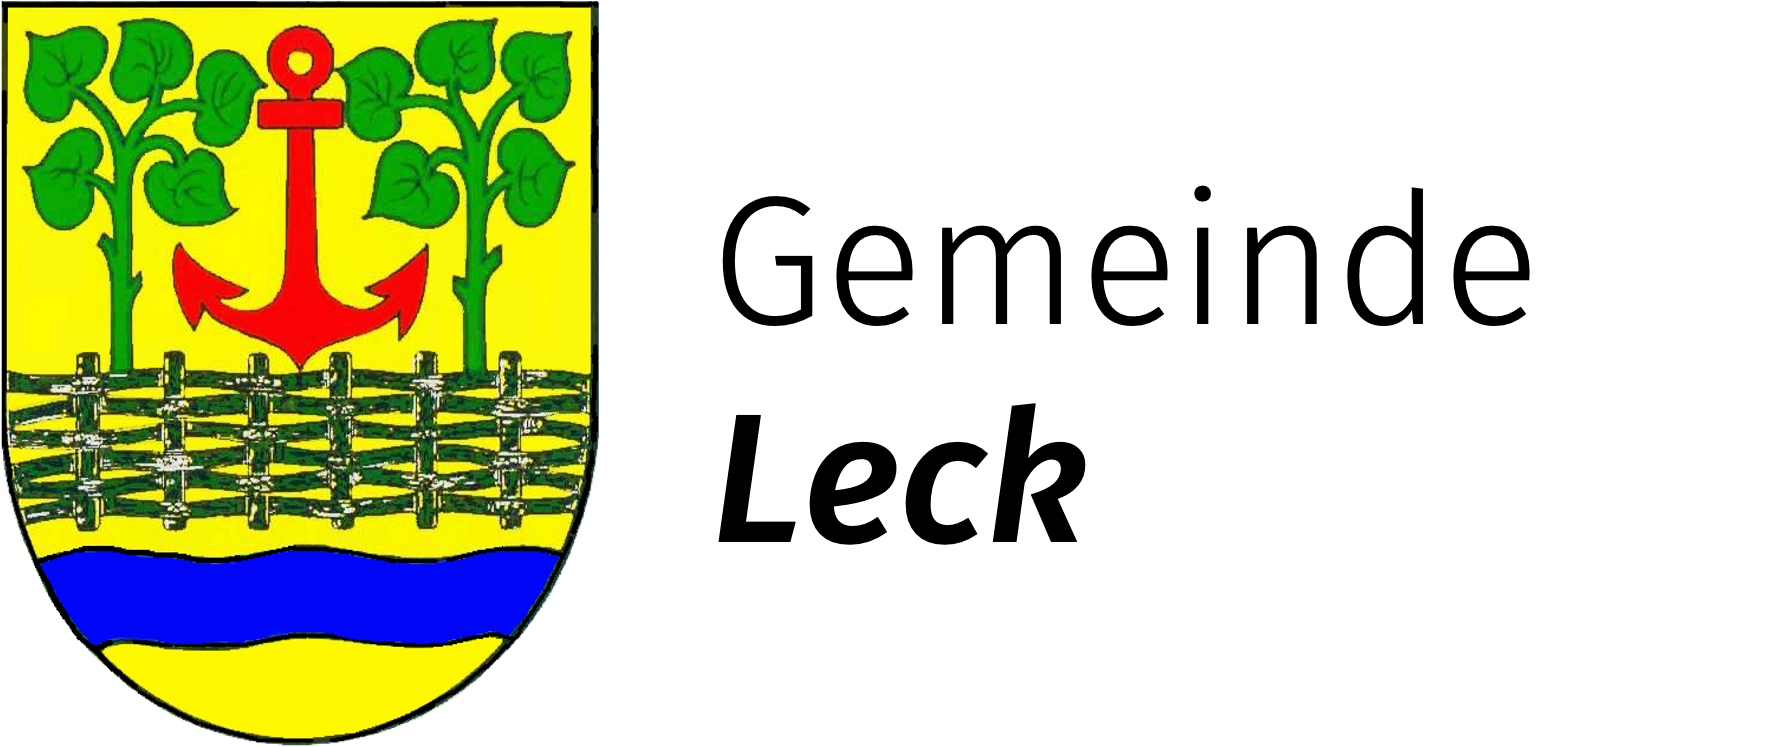 Wappen der Gemeinde Leck